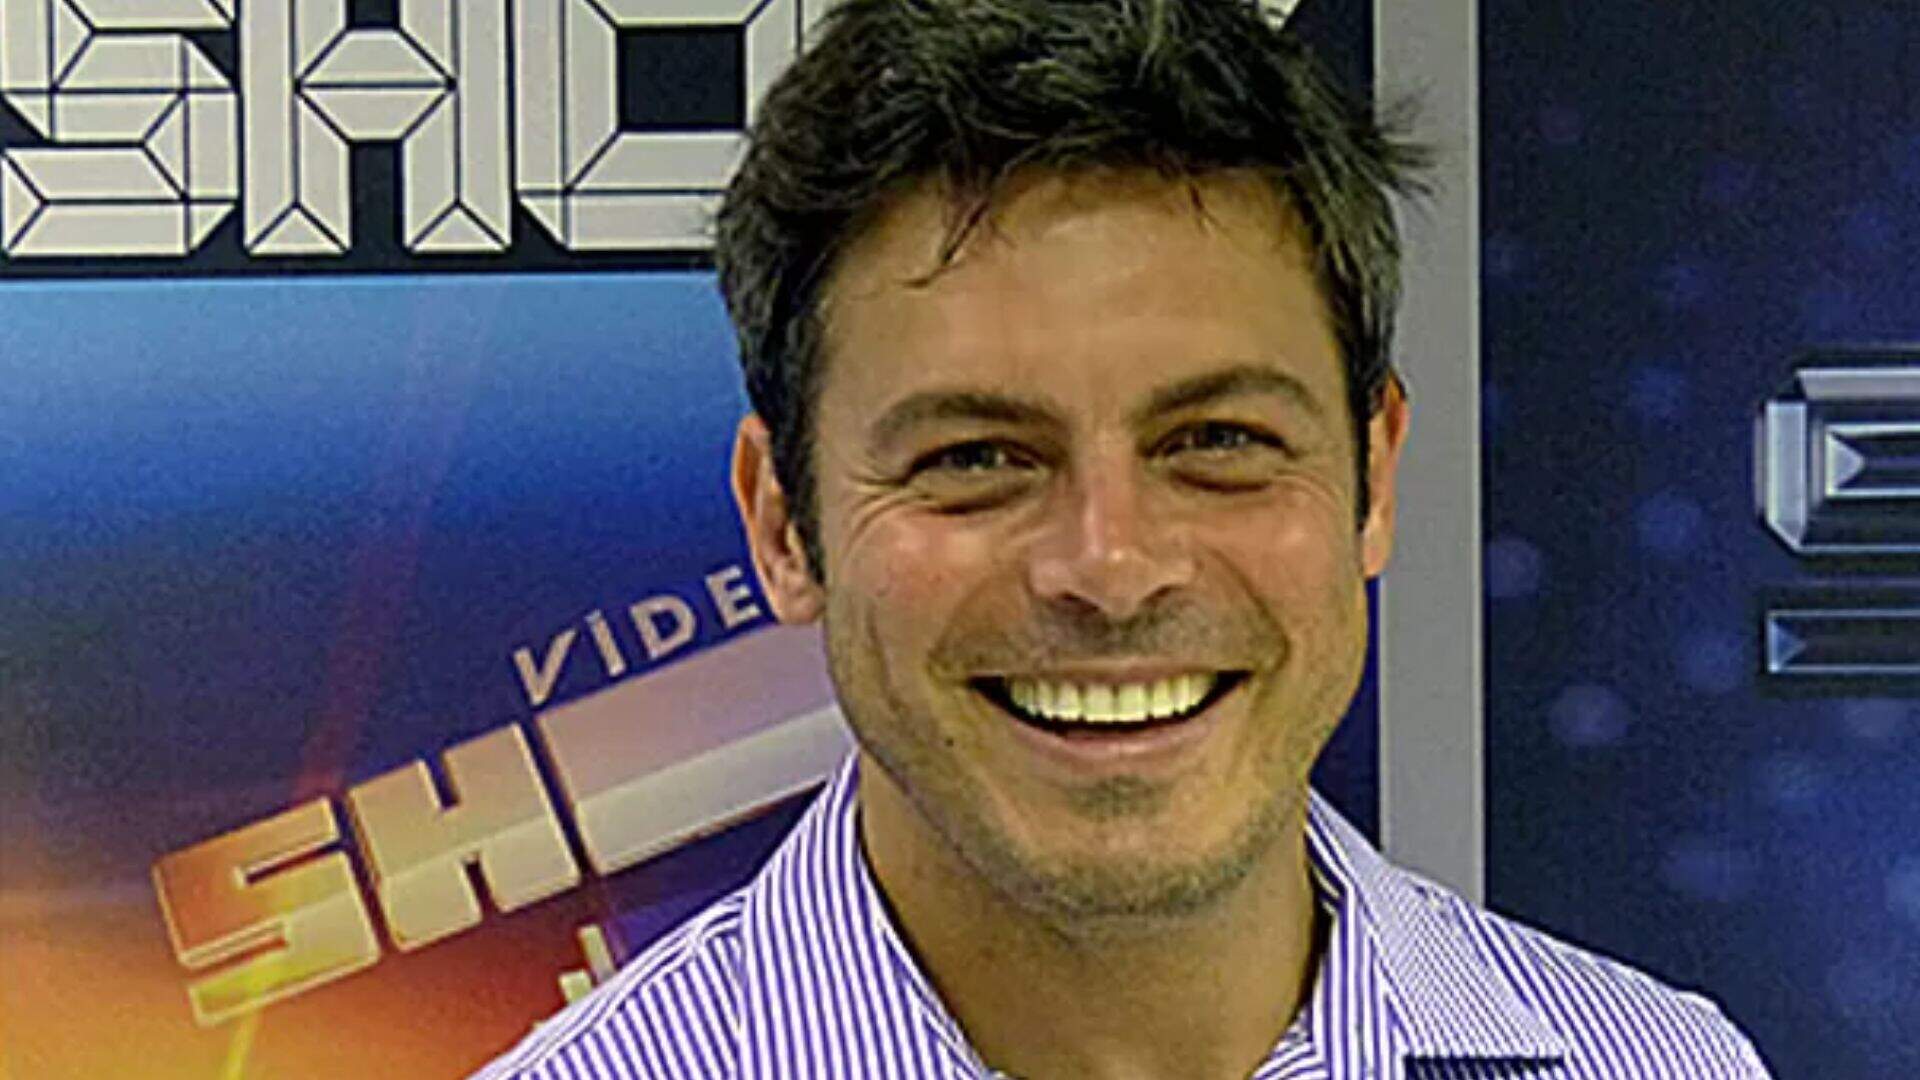 Luigi Baricelli relembra época com pensamentos suicidas durante comando do Video Show - Metropolitana FM